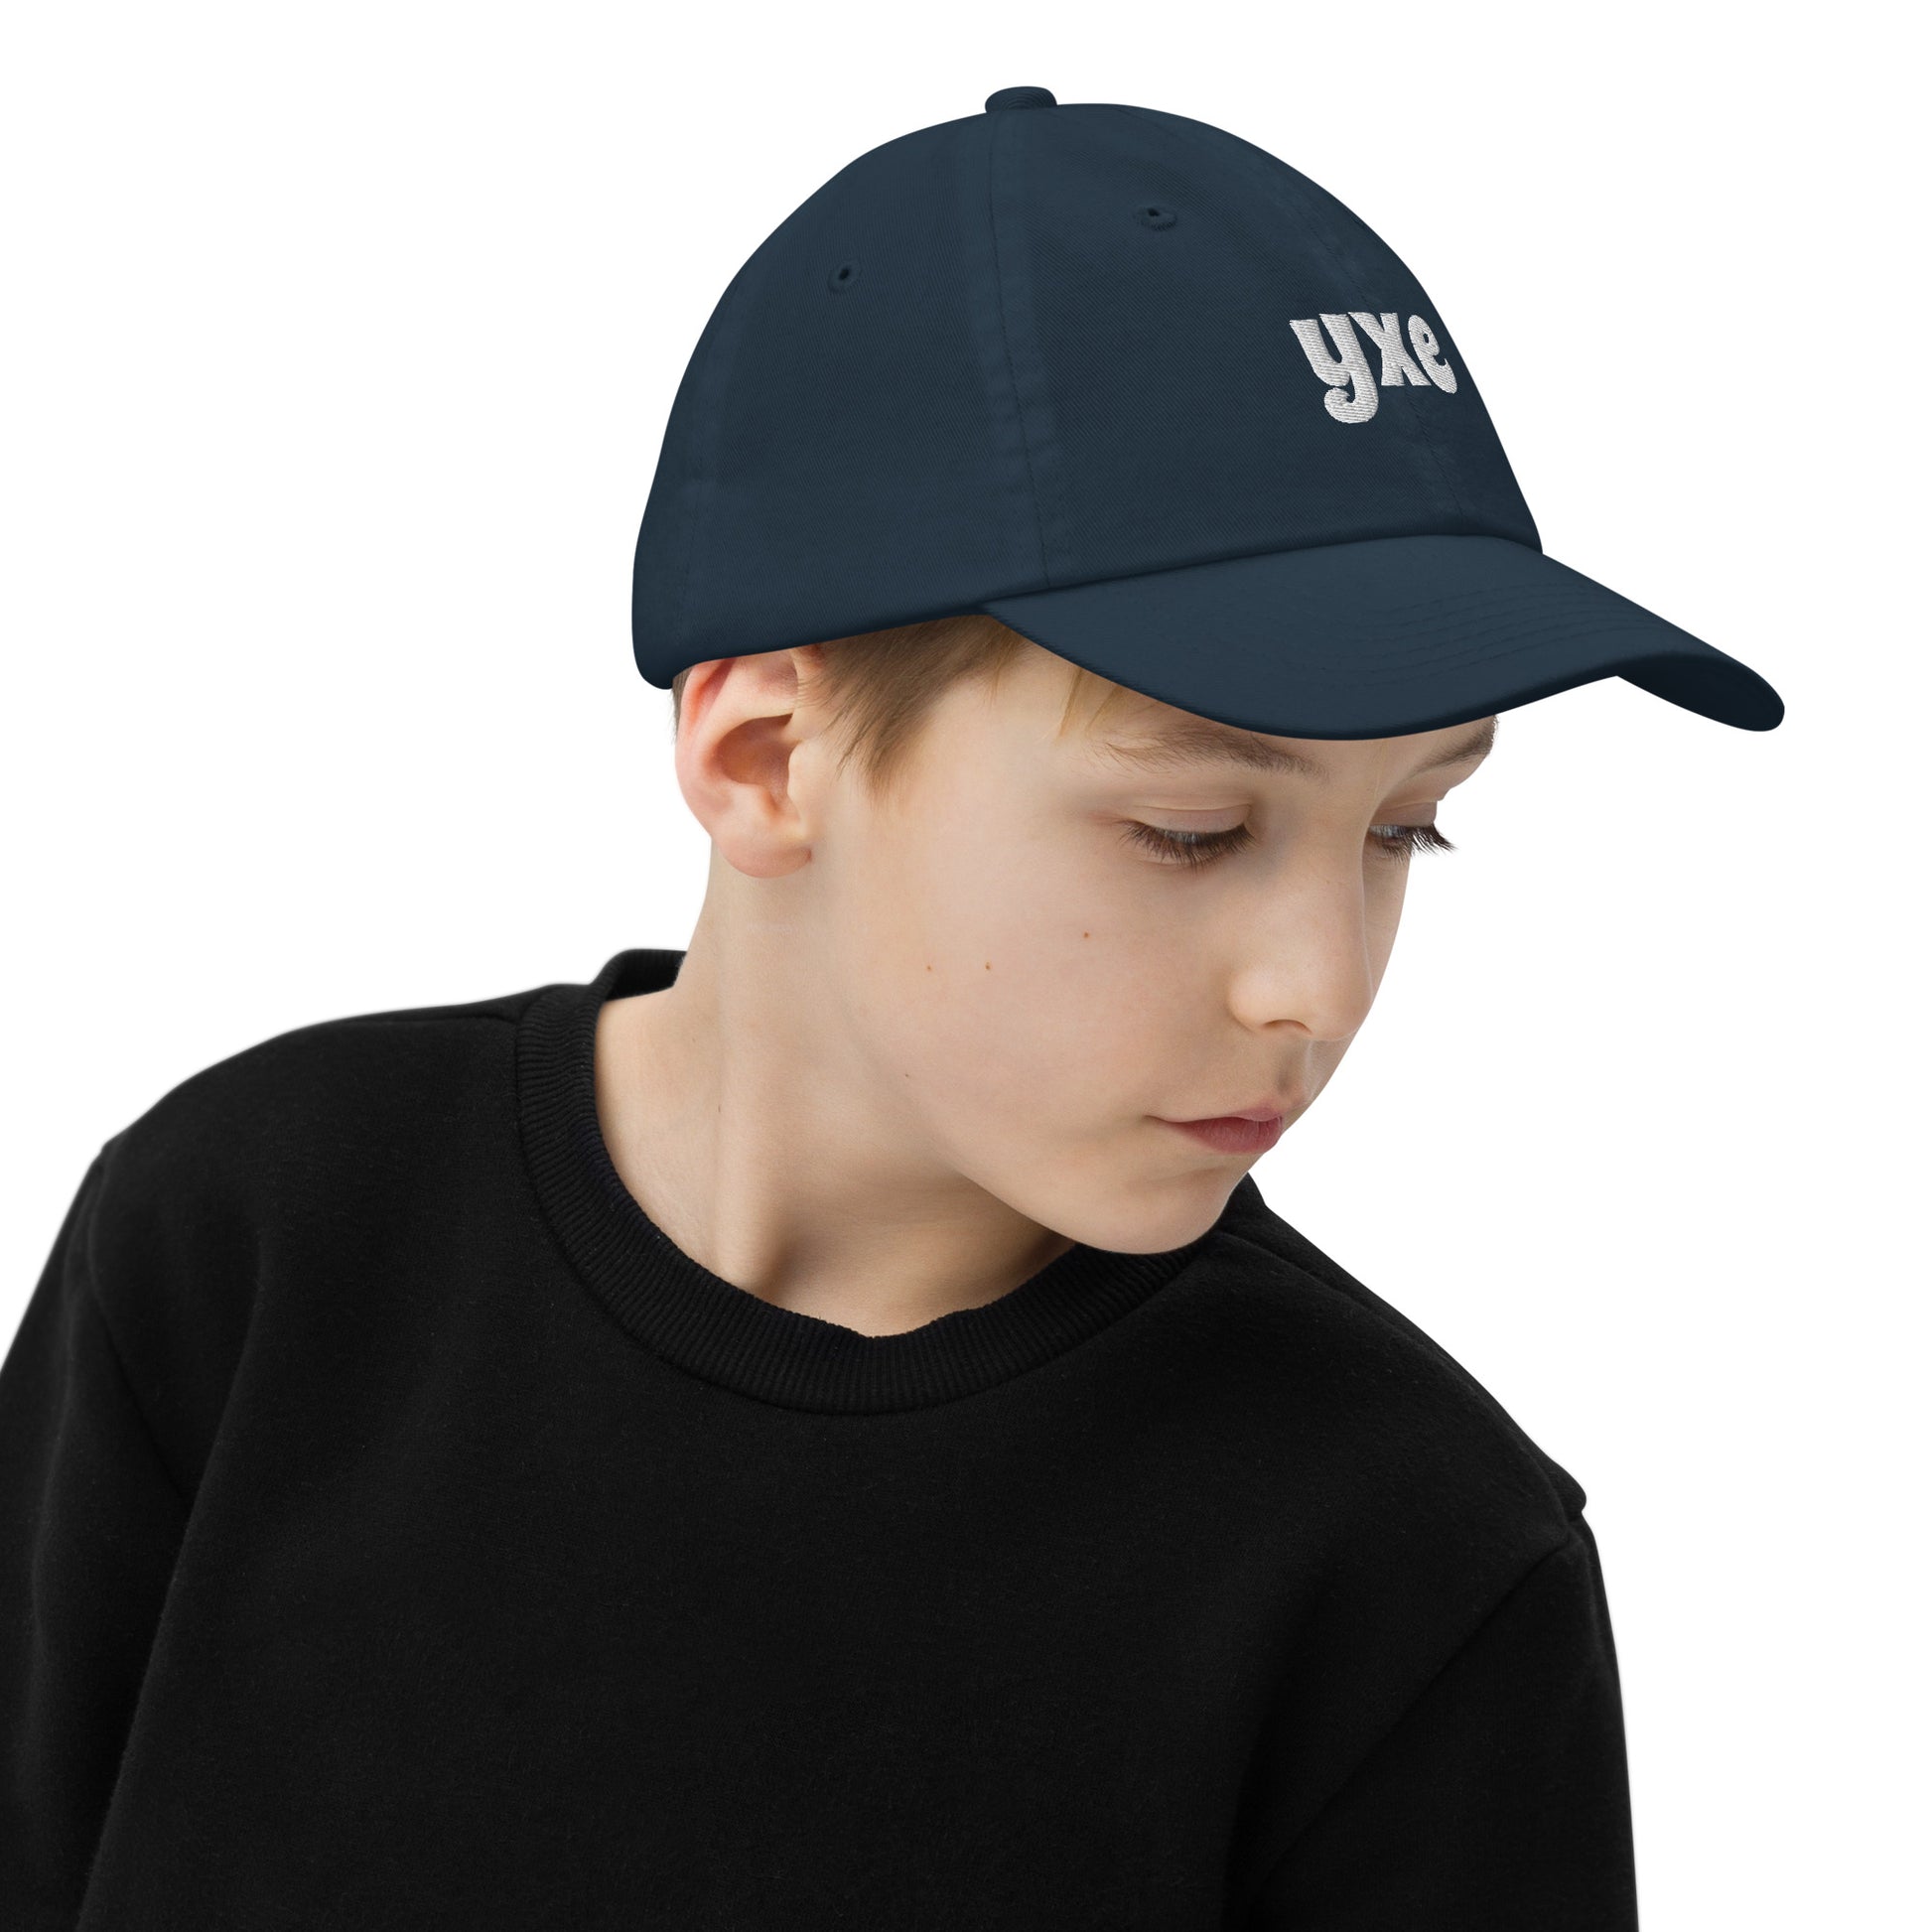 Groovy Kid's Baseball Cap - White • YXE Saskatoon • YHM Designs - Image 04